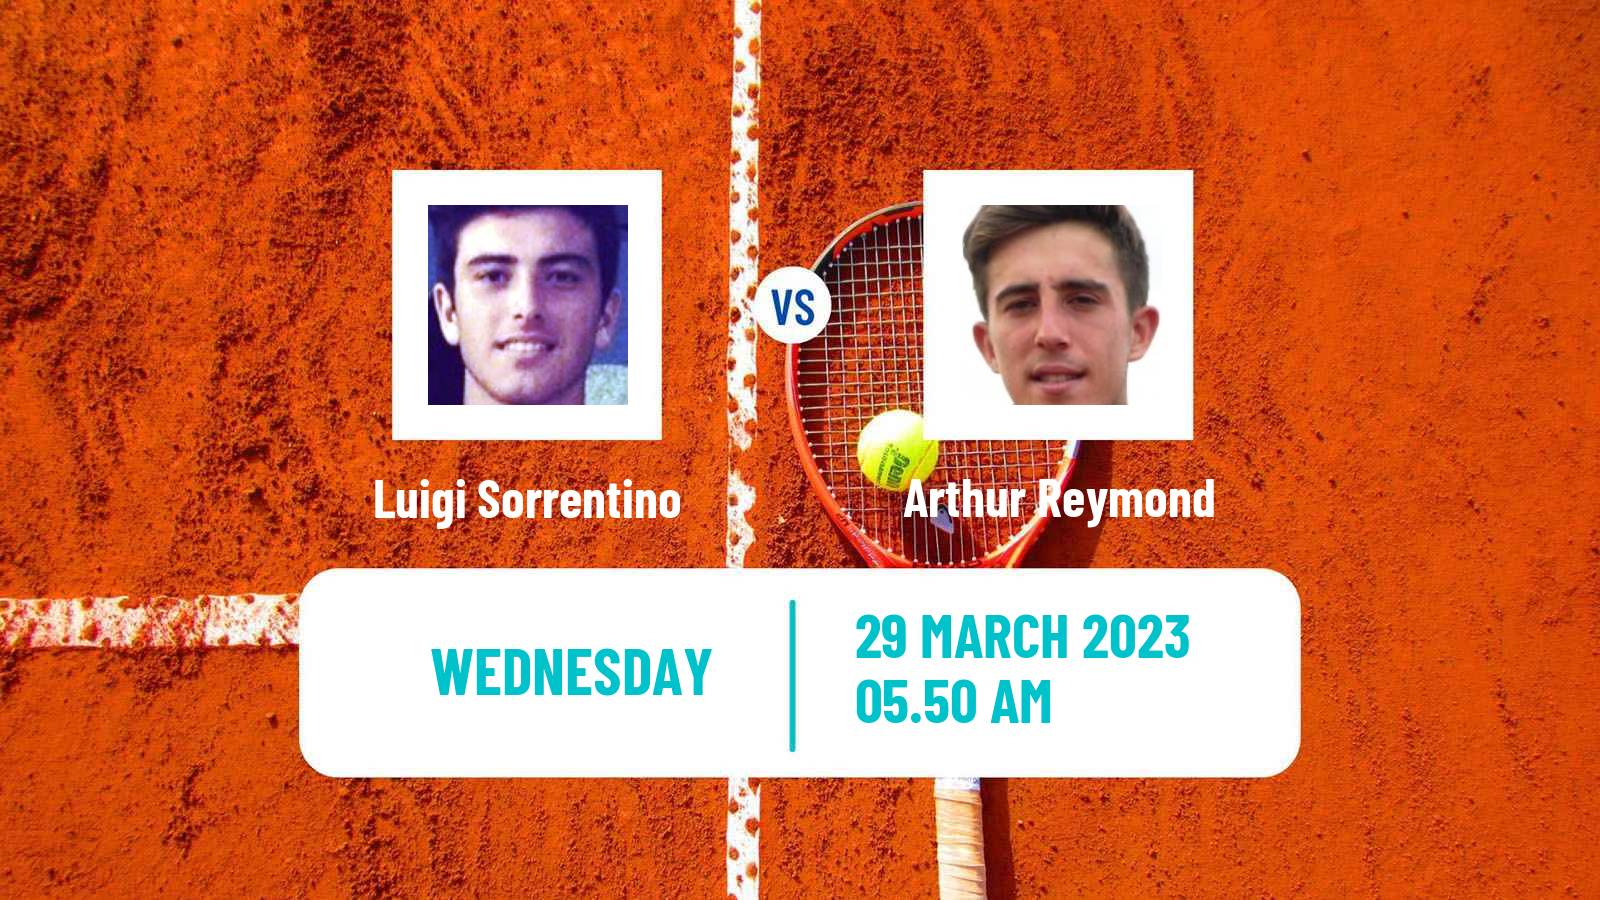 Tennis ITF Tournaments Luigi Sorrentino - Arthur Reymond